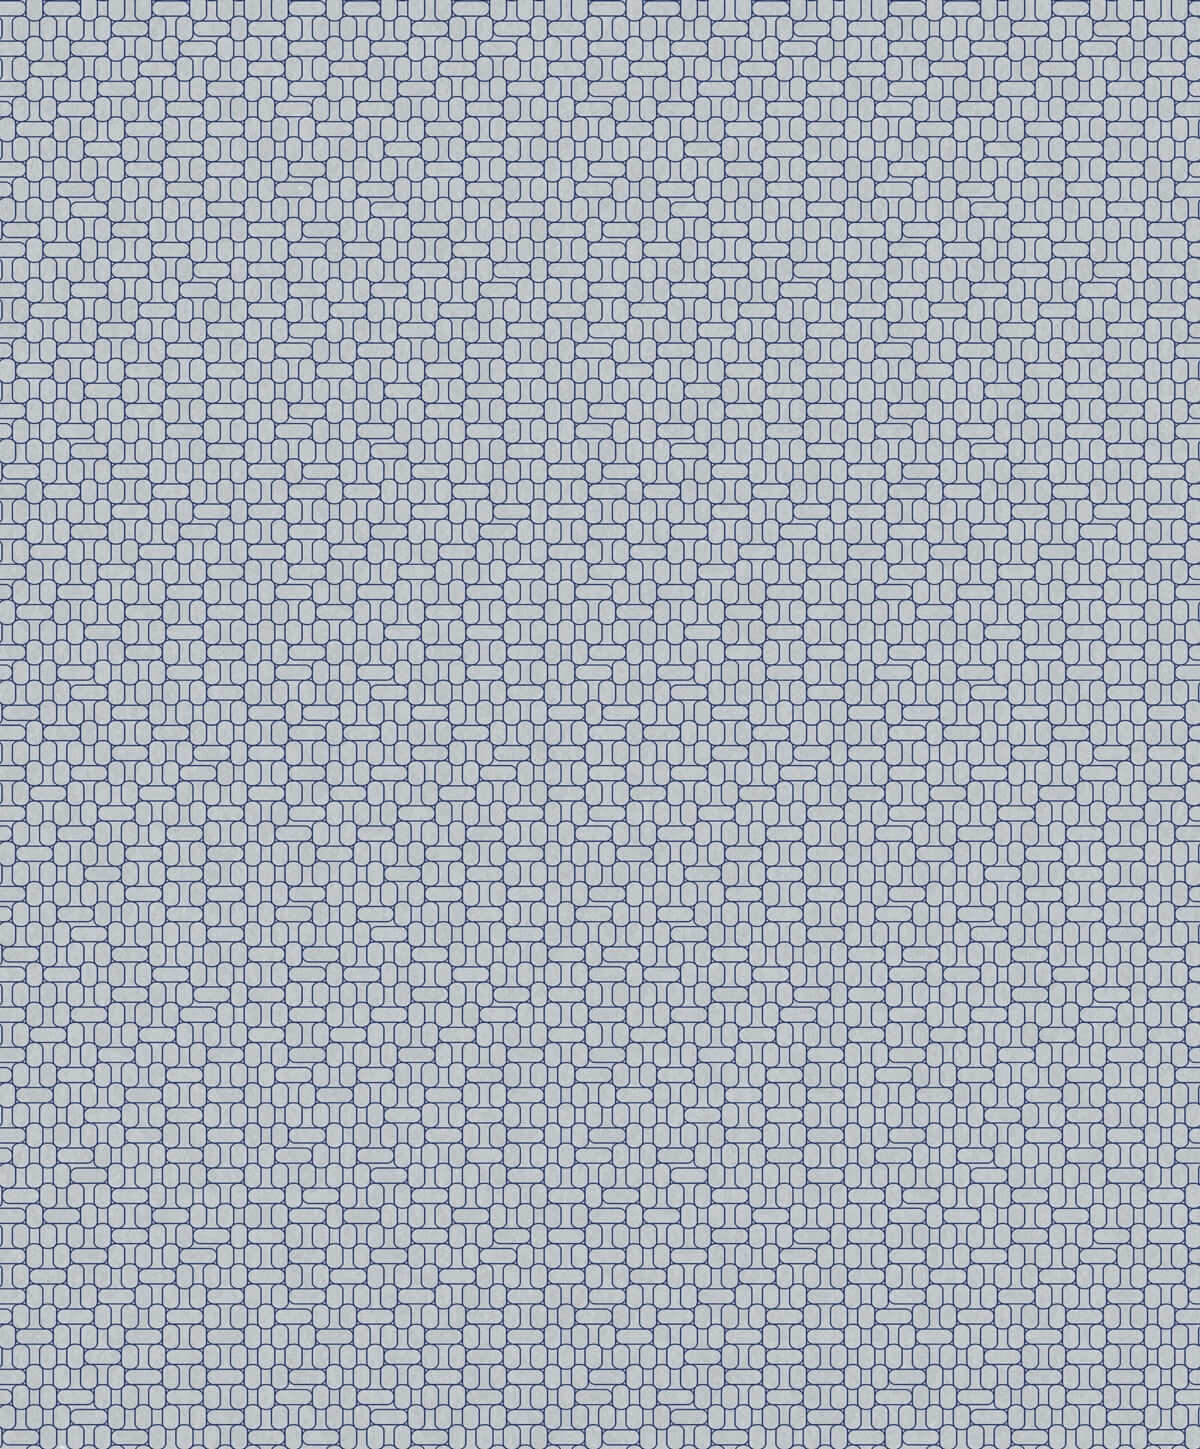 Mondrian Capsule Geometric Wallpaper - SAMPLE